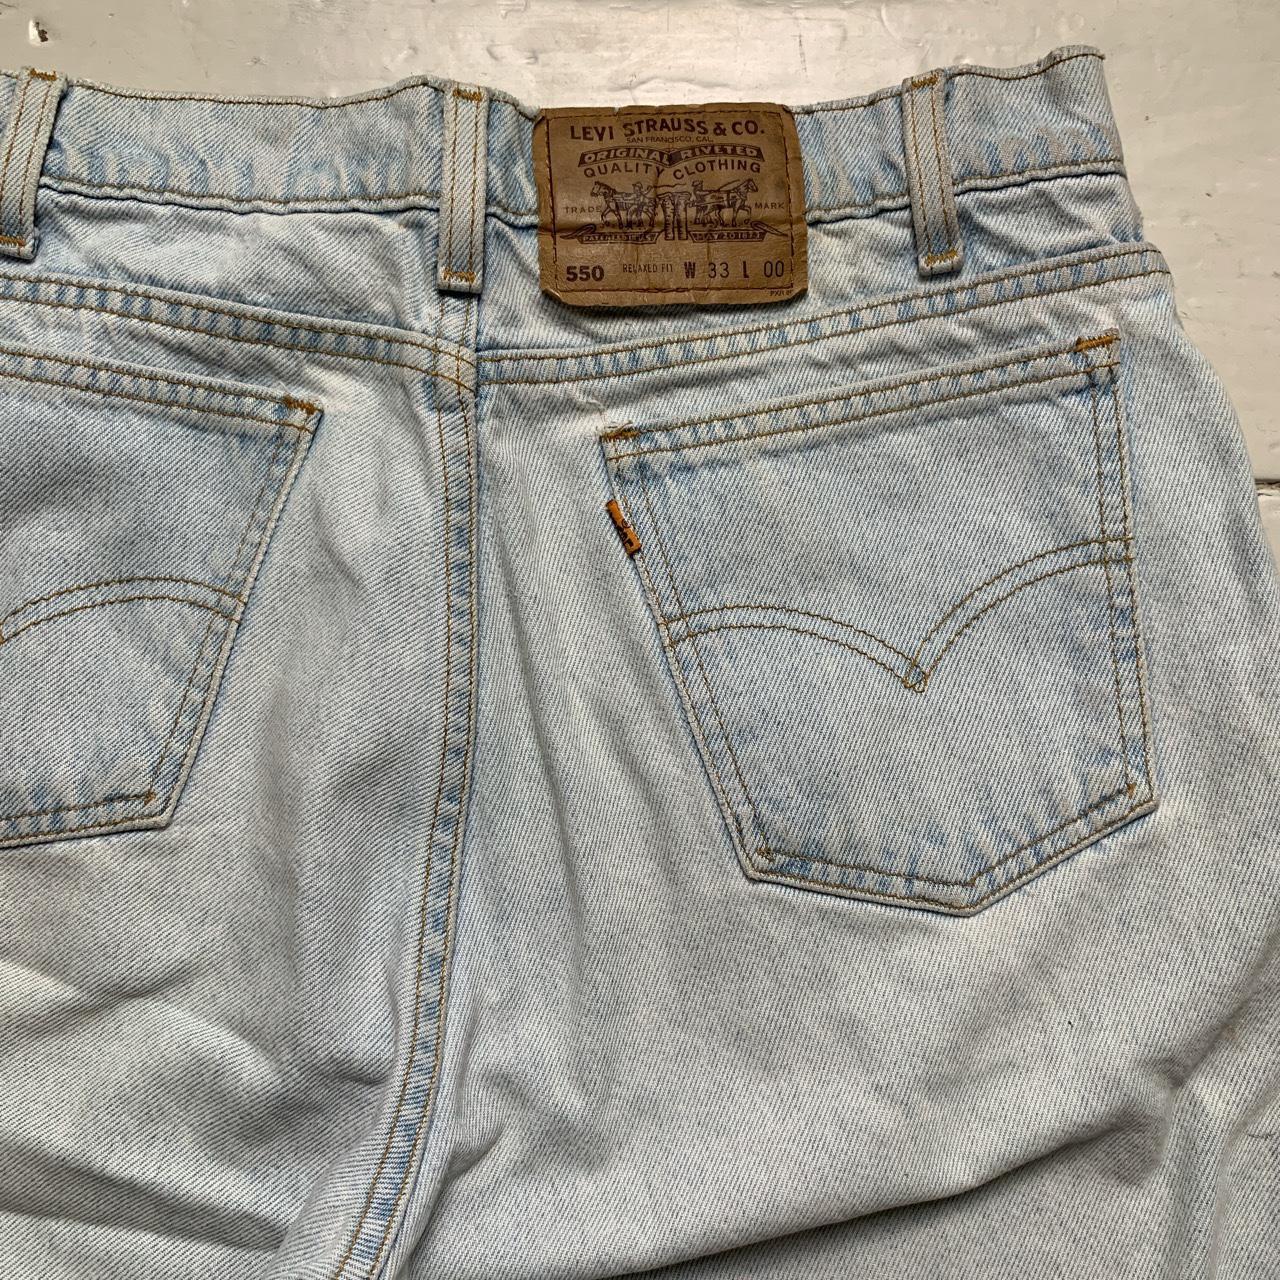 Levis 550 Light Blue Wash Vintage Jean Short Jorts